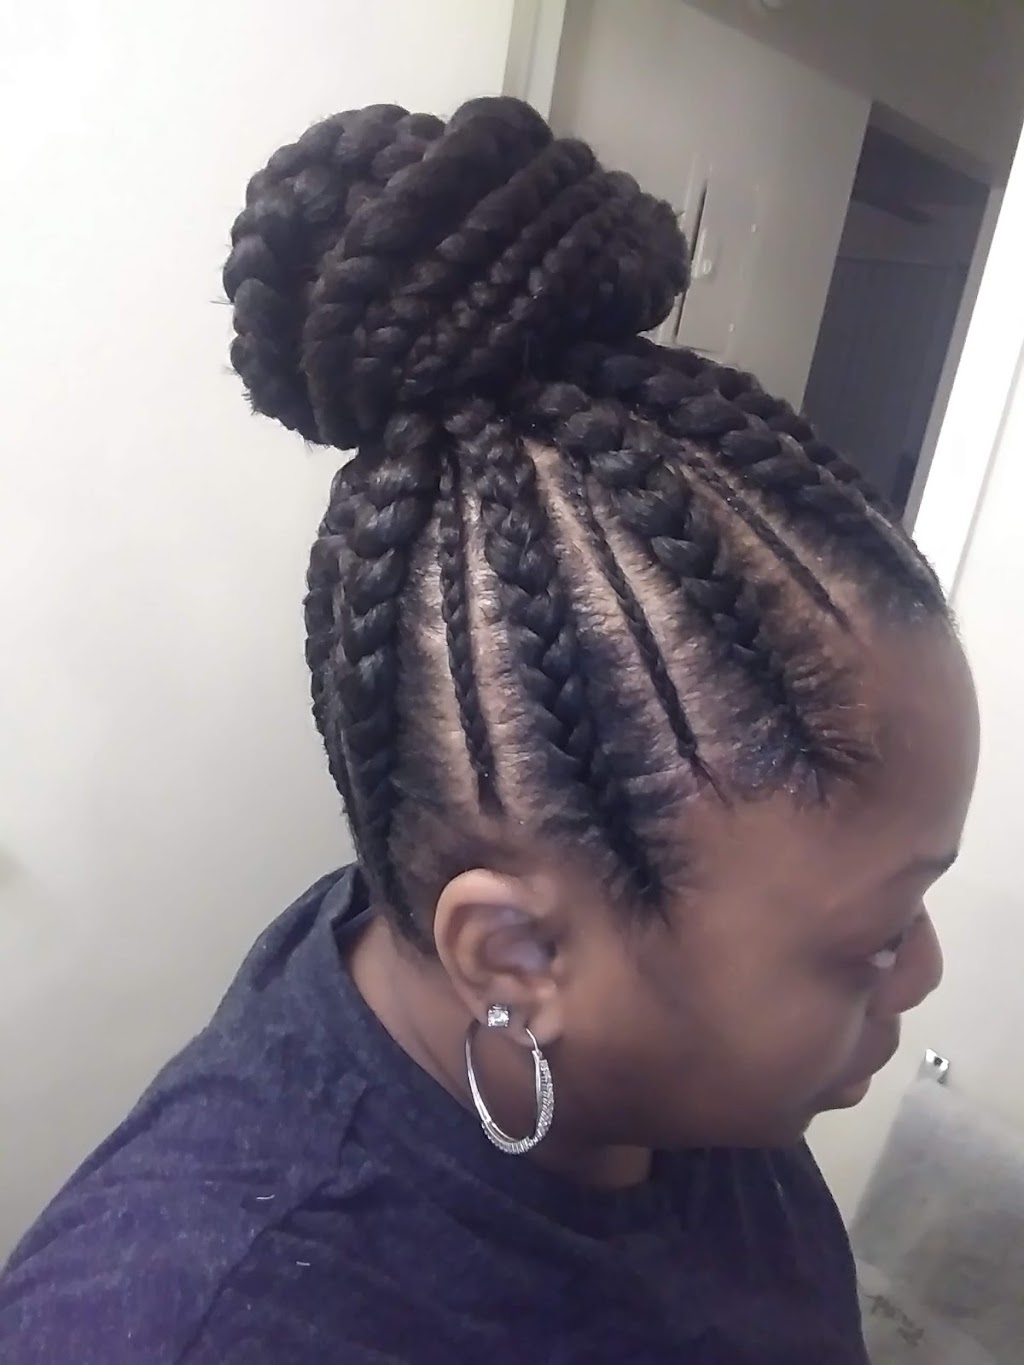 Diarra african hairbraiding | 302 S Telegraph Rd, Pontiac, MI 48341 | Phone: (248) 818-6867